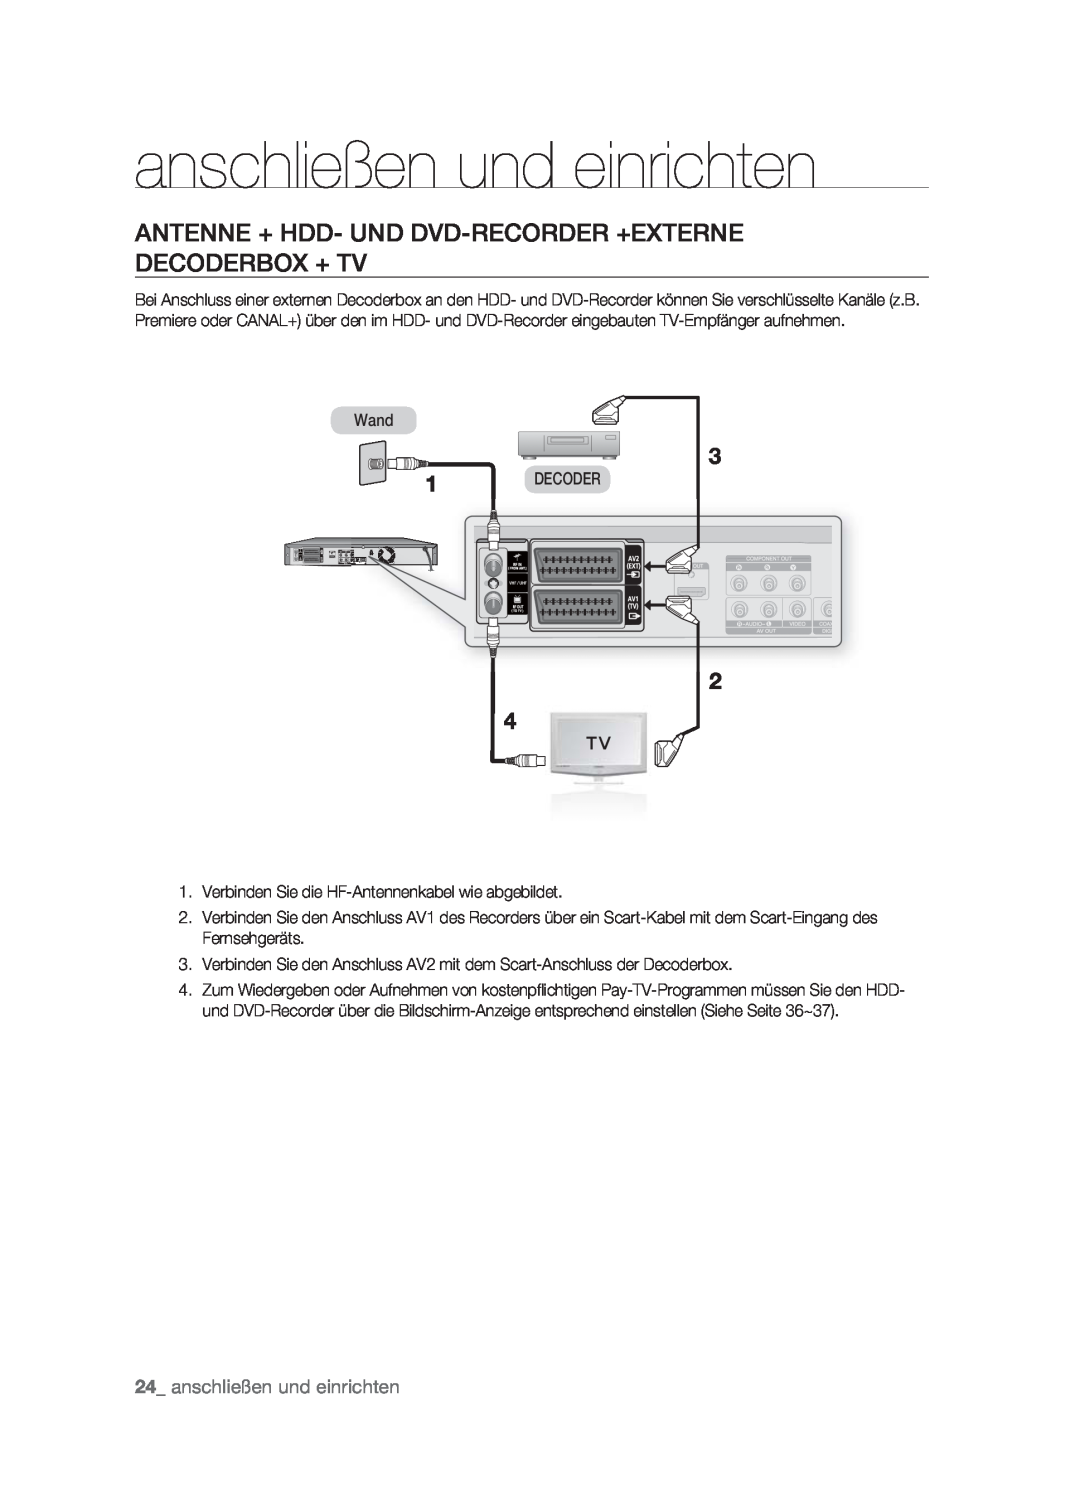 Samsung DVD-HR773/XEN, DVD-HR773/XEB Antenne + Hdd- Und Dvd-Recorder +Externe Decoderbox + Tv, anschließen und einrichten 